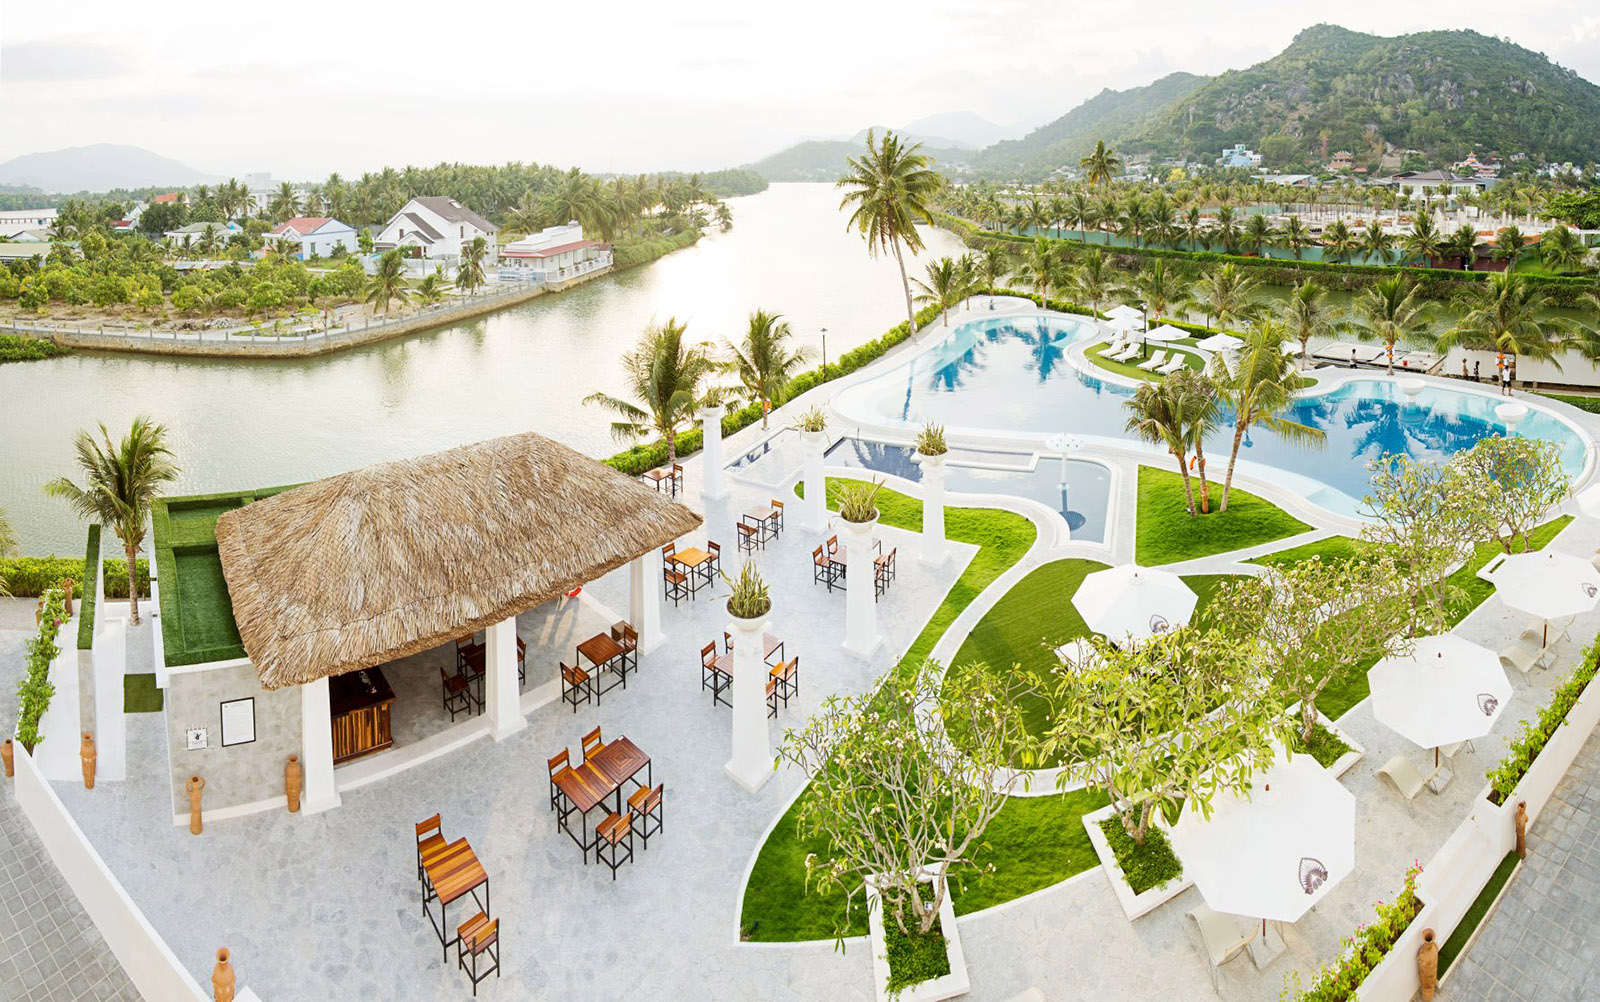 Champa Island Nha Trang - Resort Hotel & Spa- ốc đảo xanh giữa lòng thành phố biển